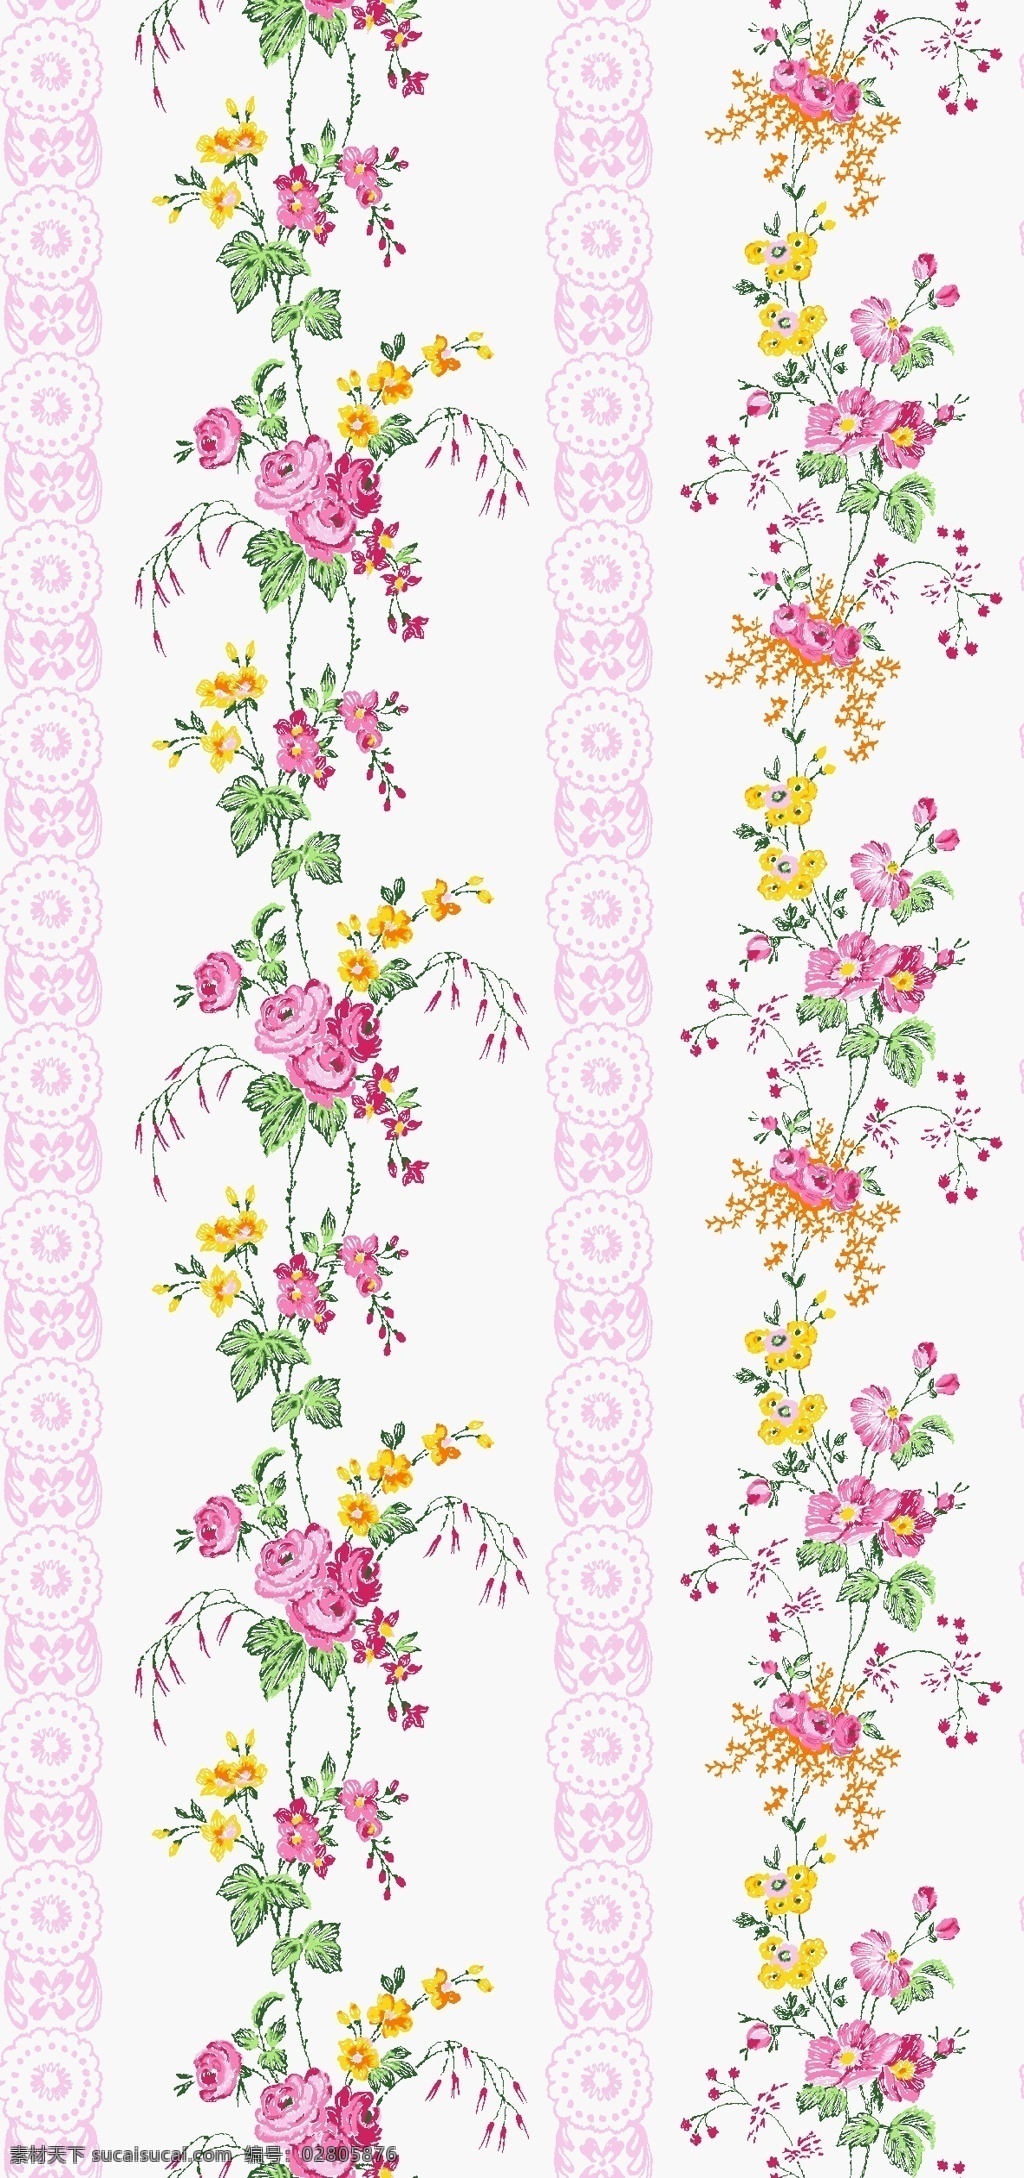 面料设计 墙纸设计 服装面料 花卉 植物底纹 现代纹 花边花纹 底纹边框